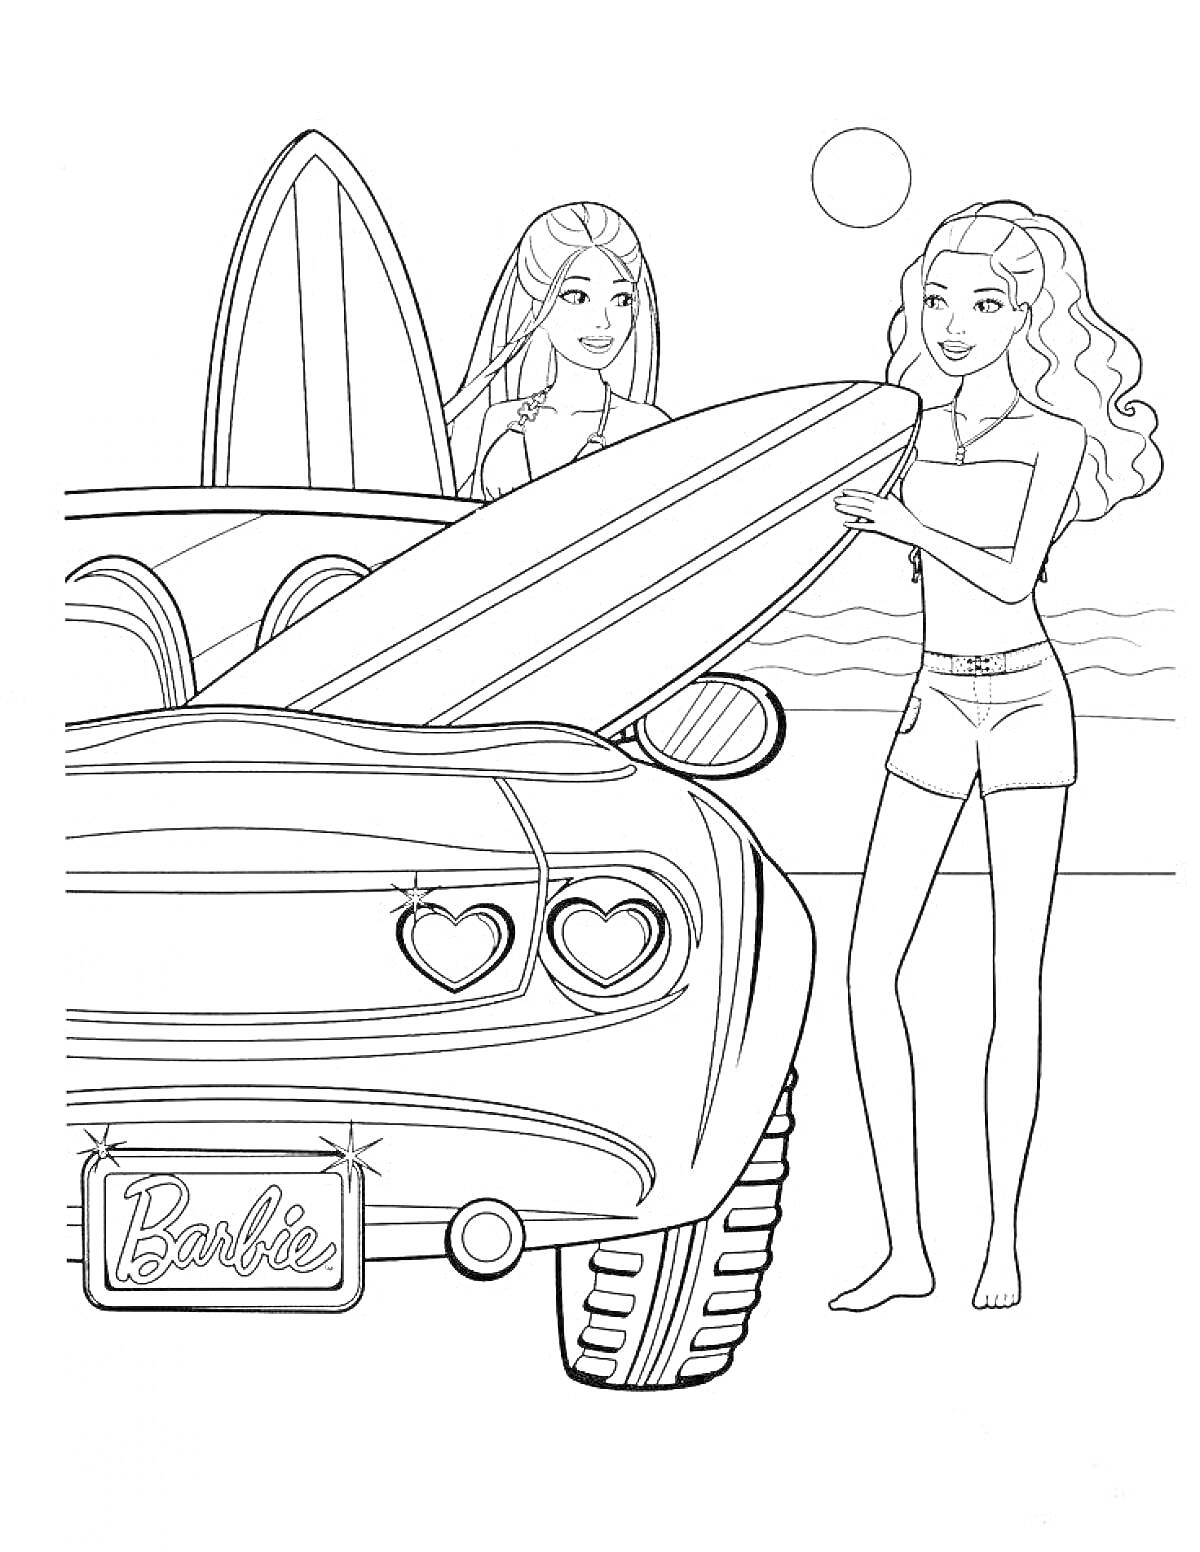 Две девушки с досками для серфинга у машины с номером 